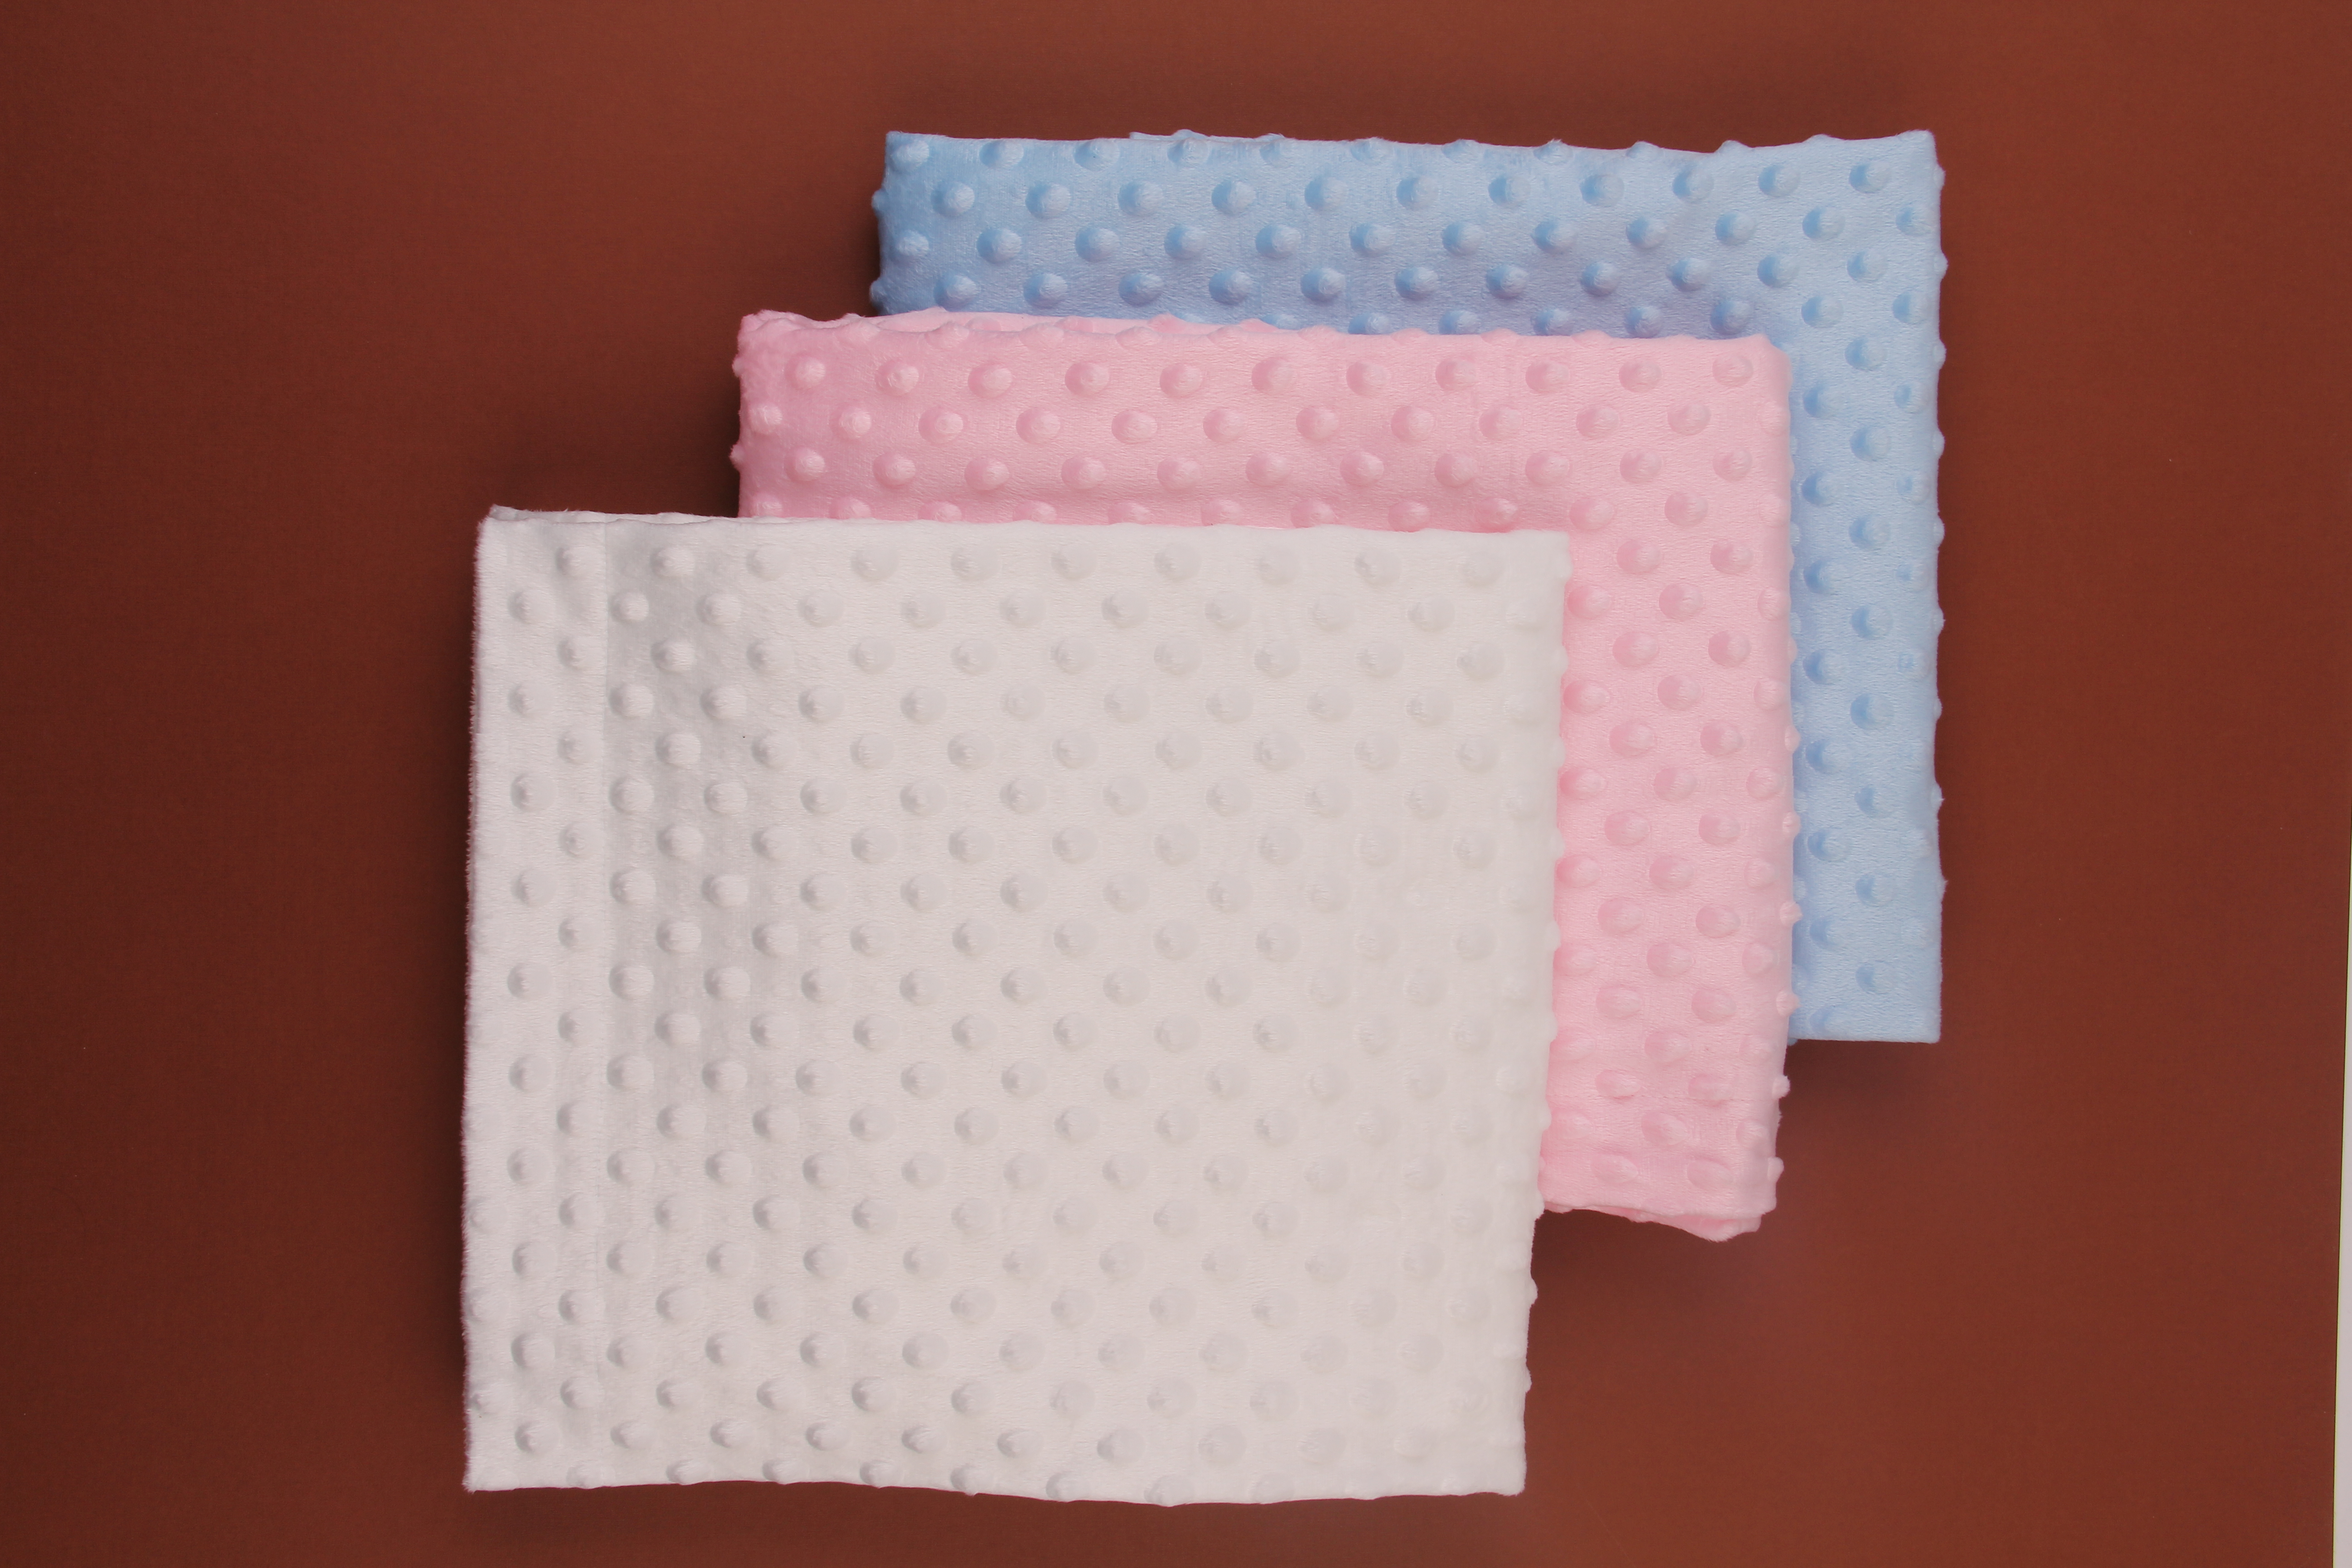 Kışlık Bebek Battaniyesi Modelleri - Miniropa Kışlık Bebek Battaniyeleri